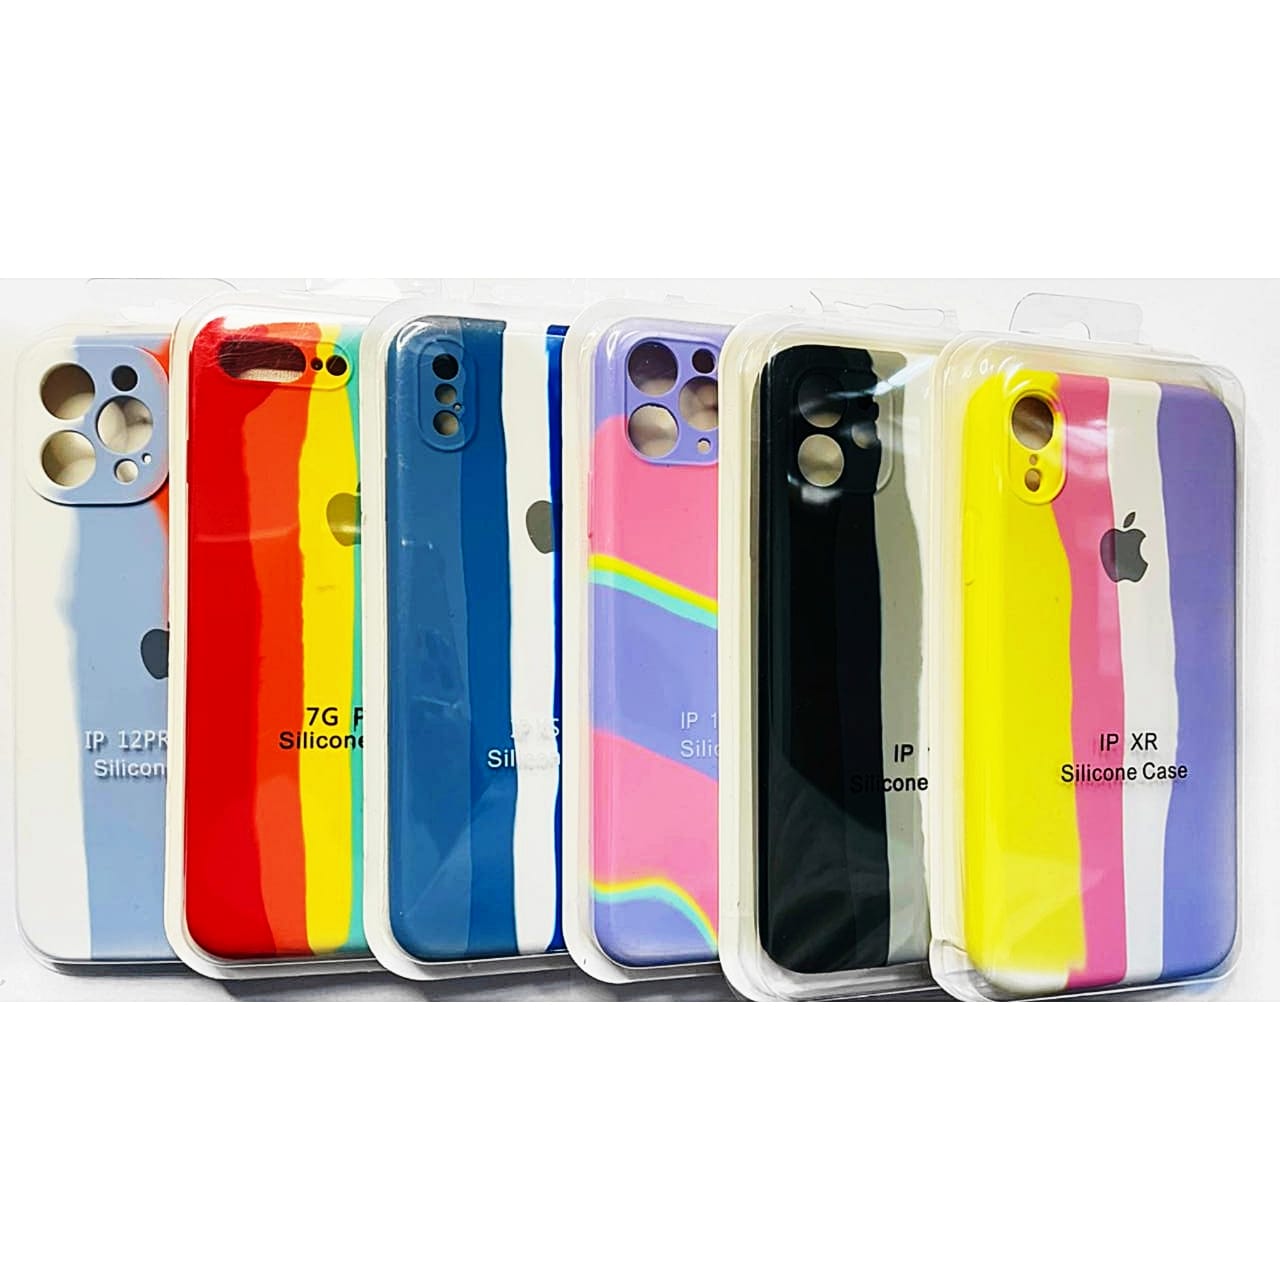 Capa Case Original Iphone 7/8 Cores Pasteis  - Capinhas para Celular - Diversas cores - Central - unidade            Cod. CP IP 7/8 PASTEIS